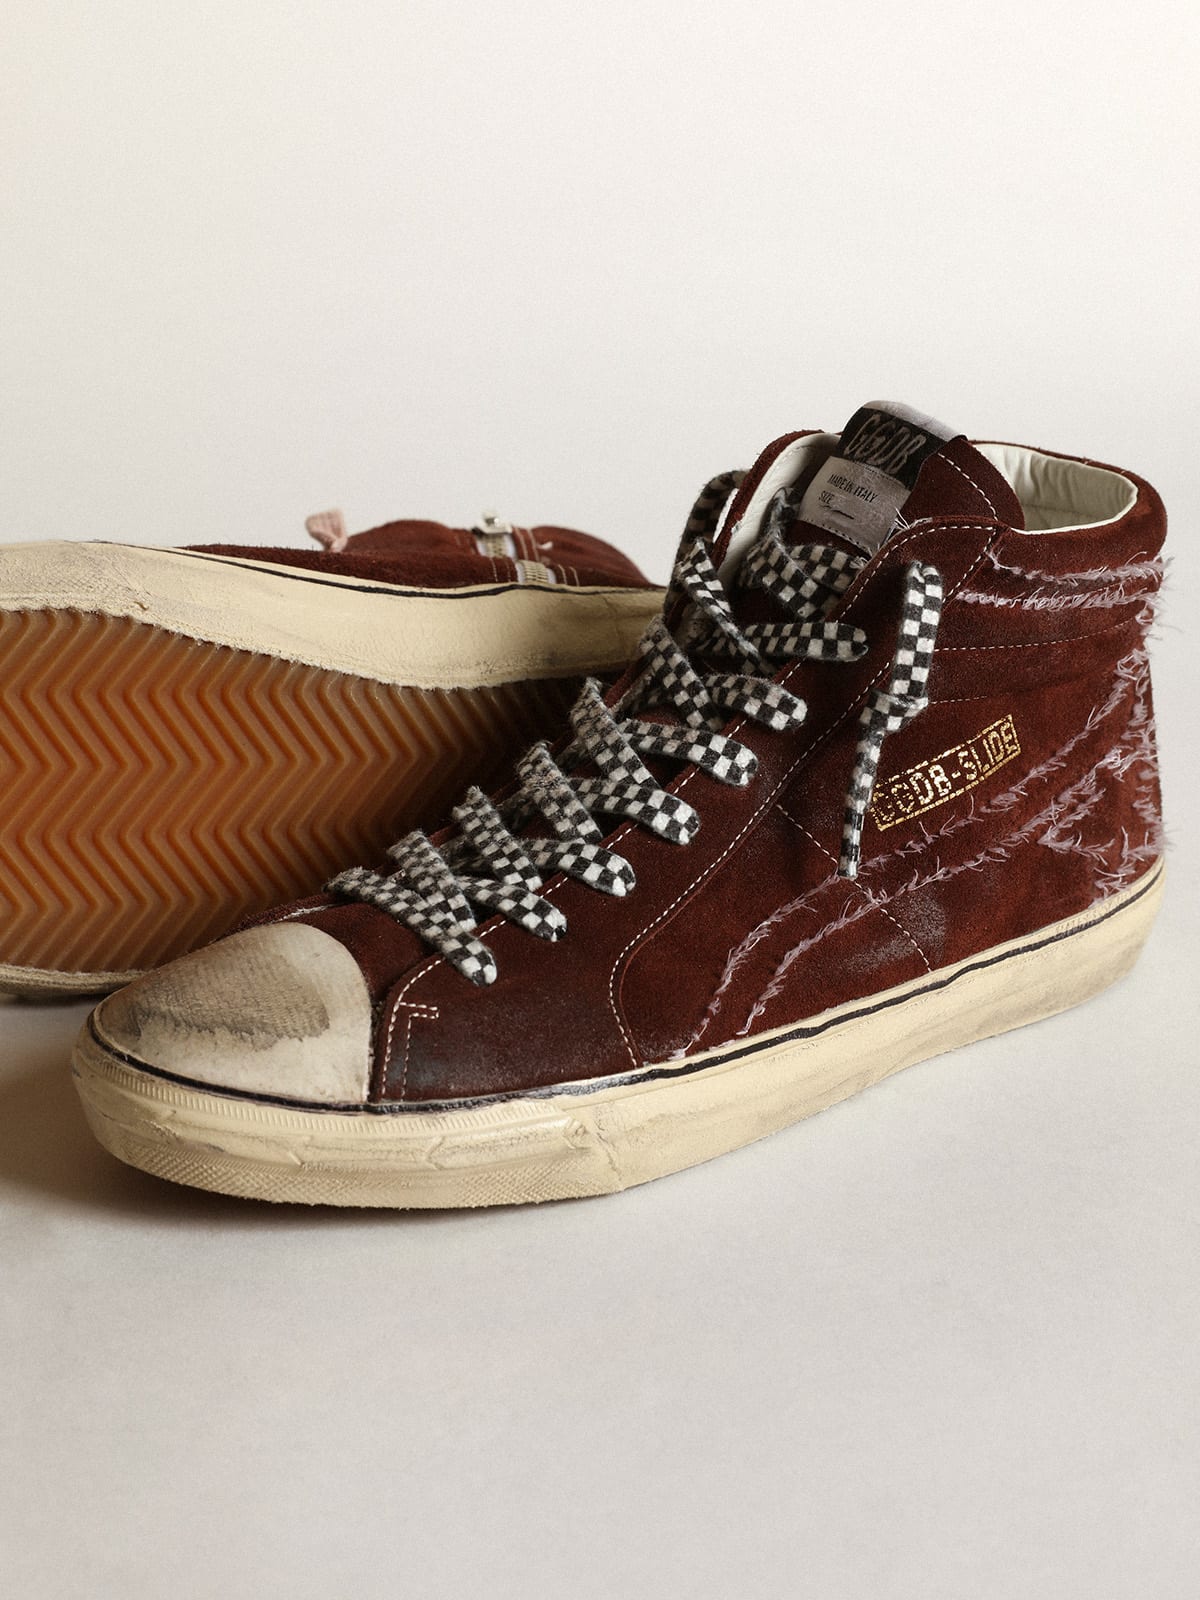 Golden Goose - Sneakers Slide en daim couleur chocolat avec étoile et virgule ornées de surpiqûres blanches in 